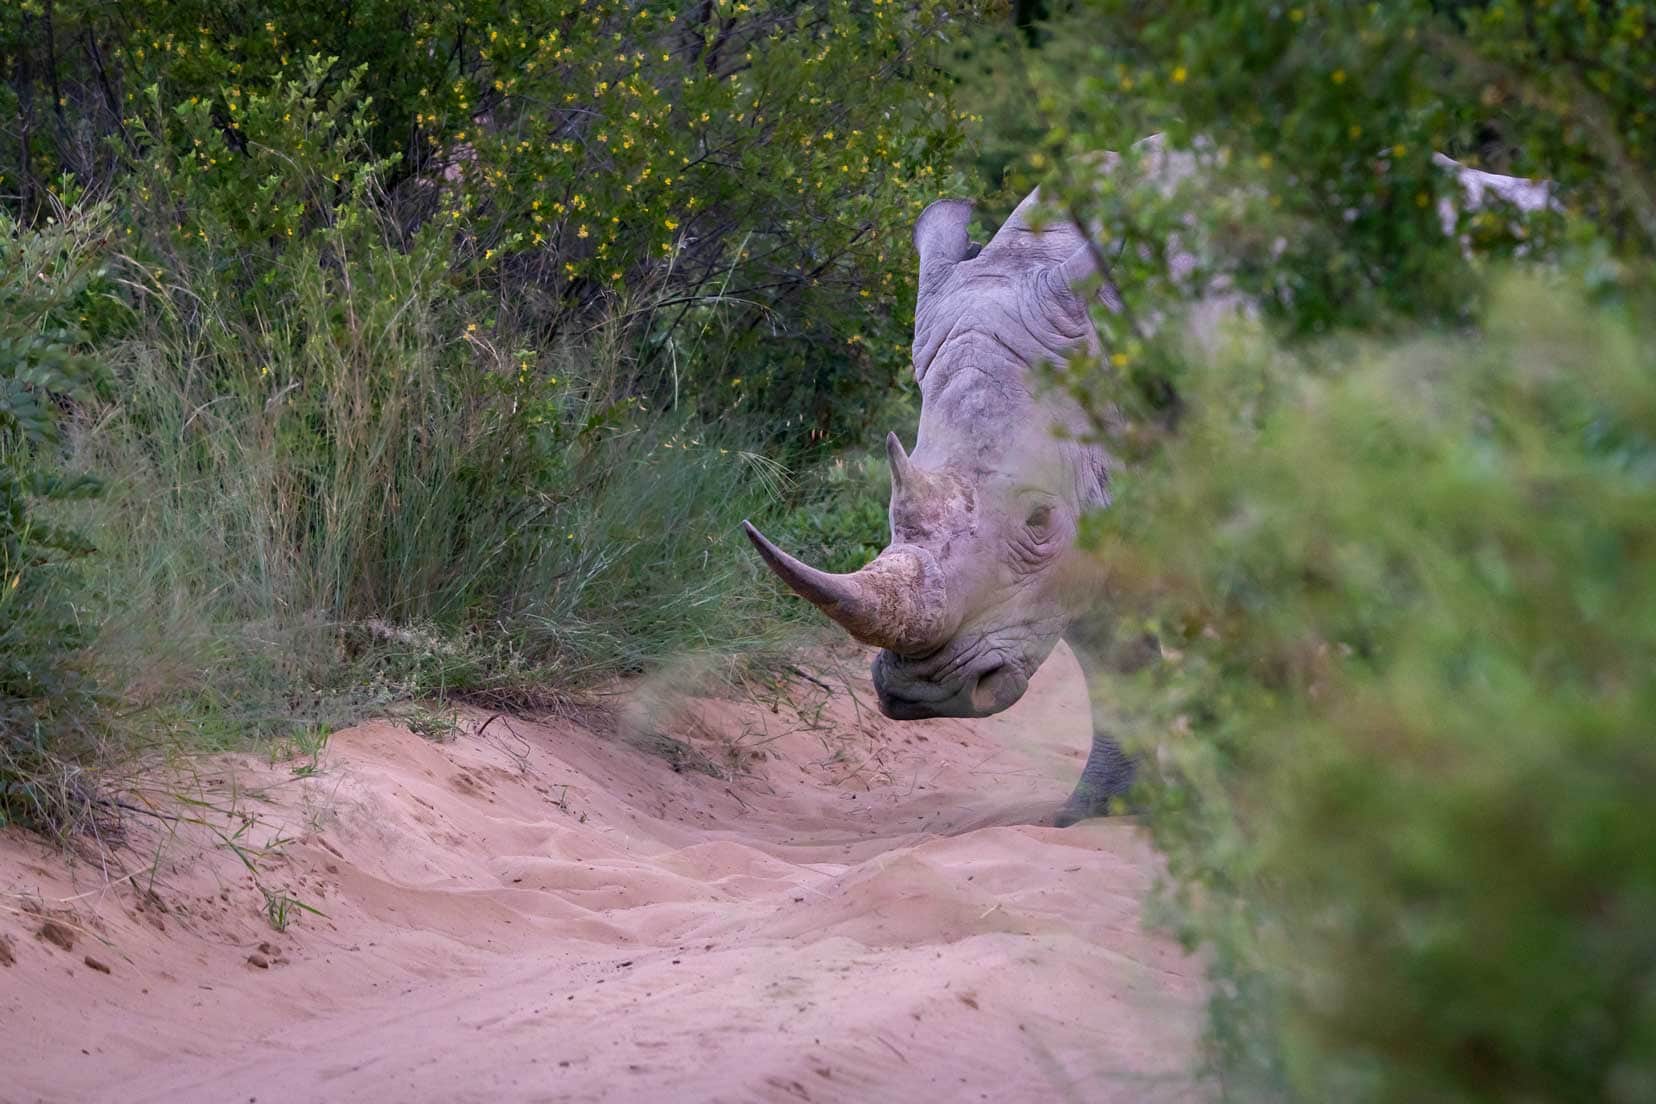 Khama Rhino Sanctuary Rhino in sand peeking around a bush